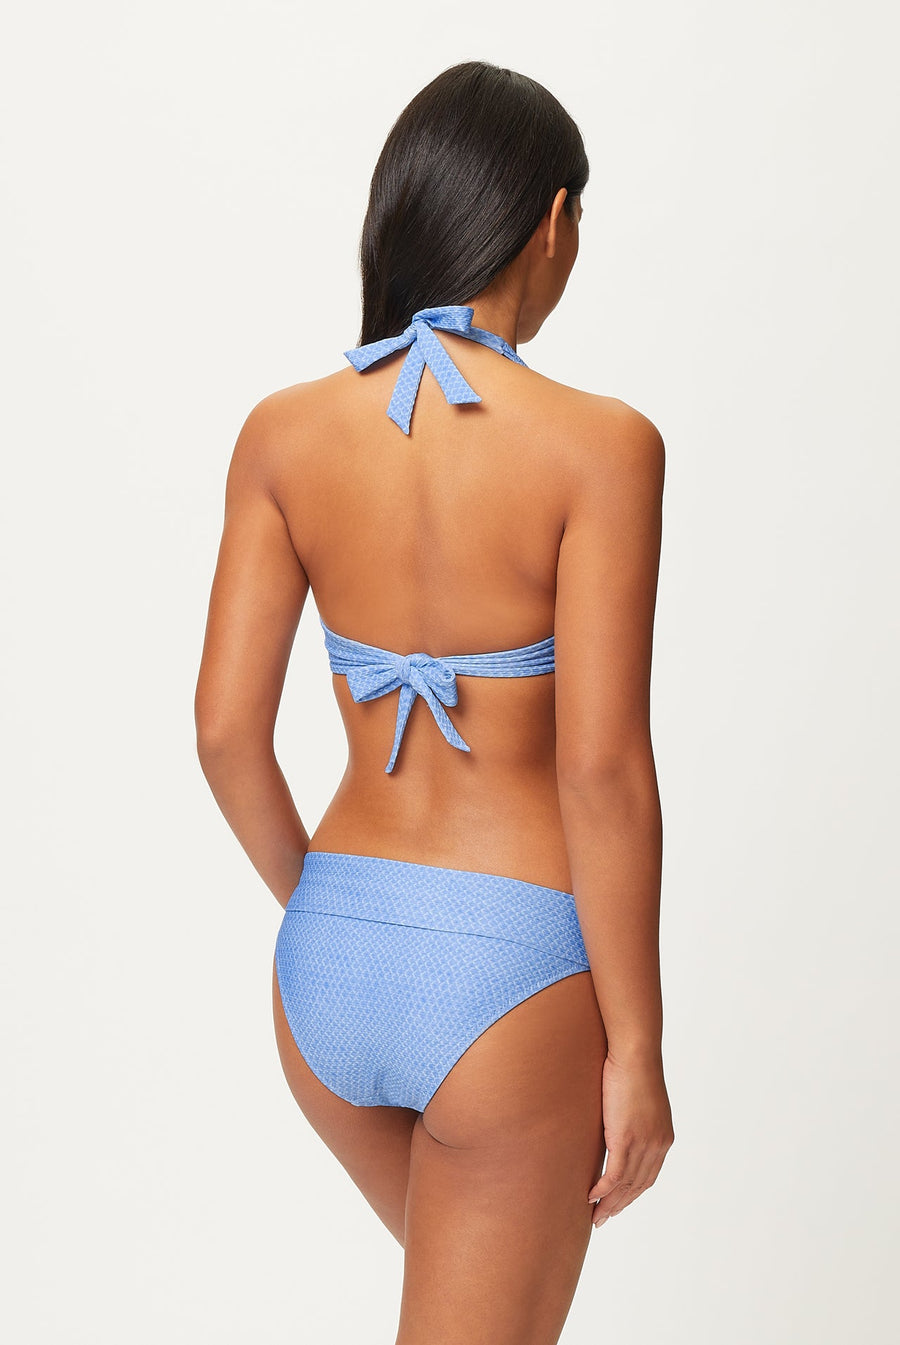 Heidi Klein Indian Ocean Bikini Set